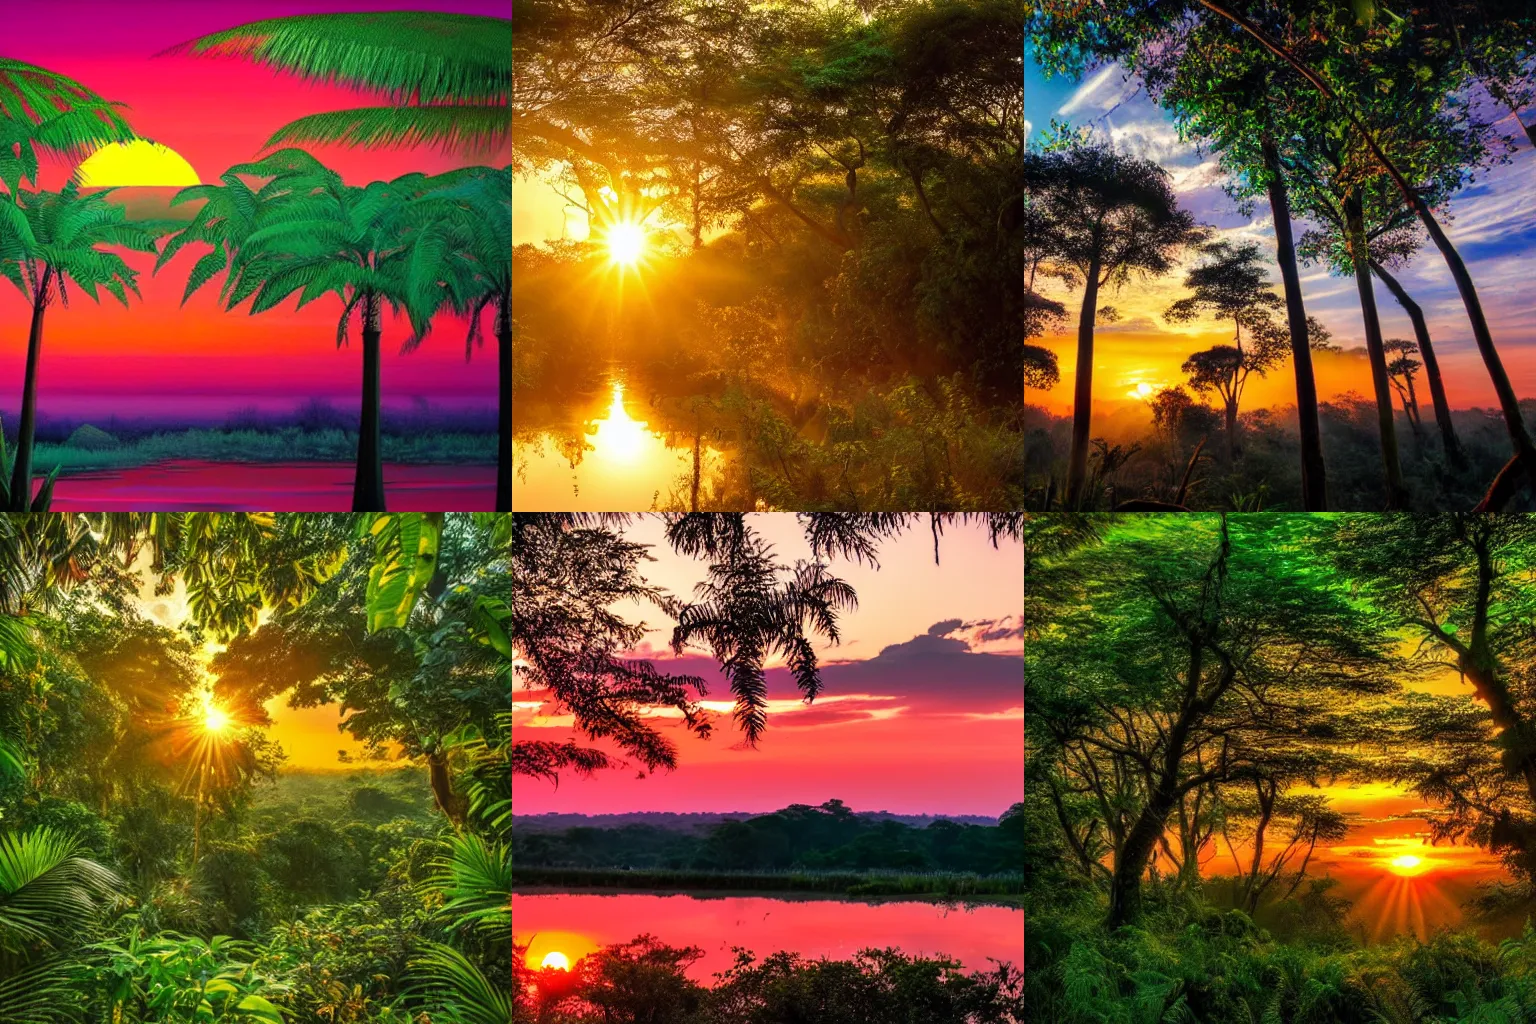 Prompt: beautiful sunrise in a vibrant jungle